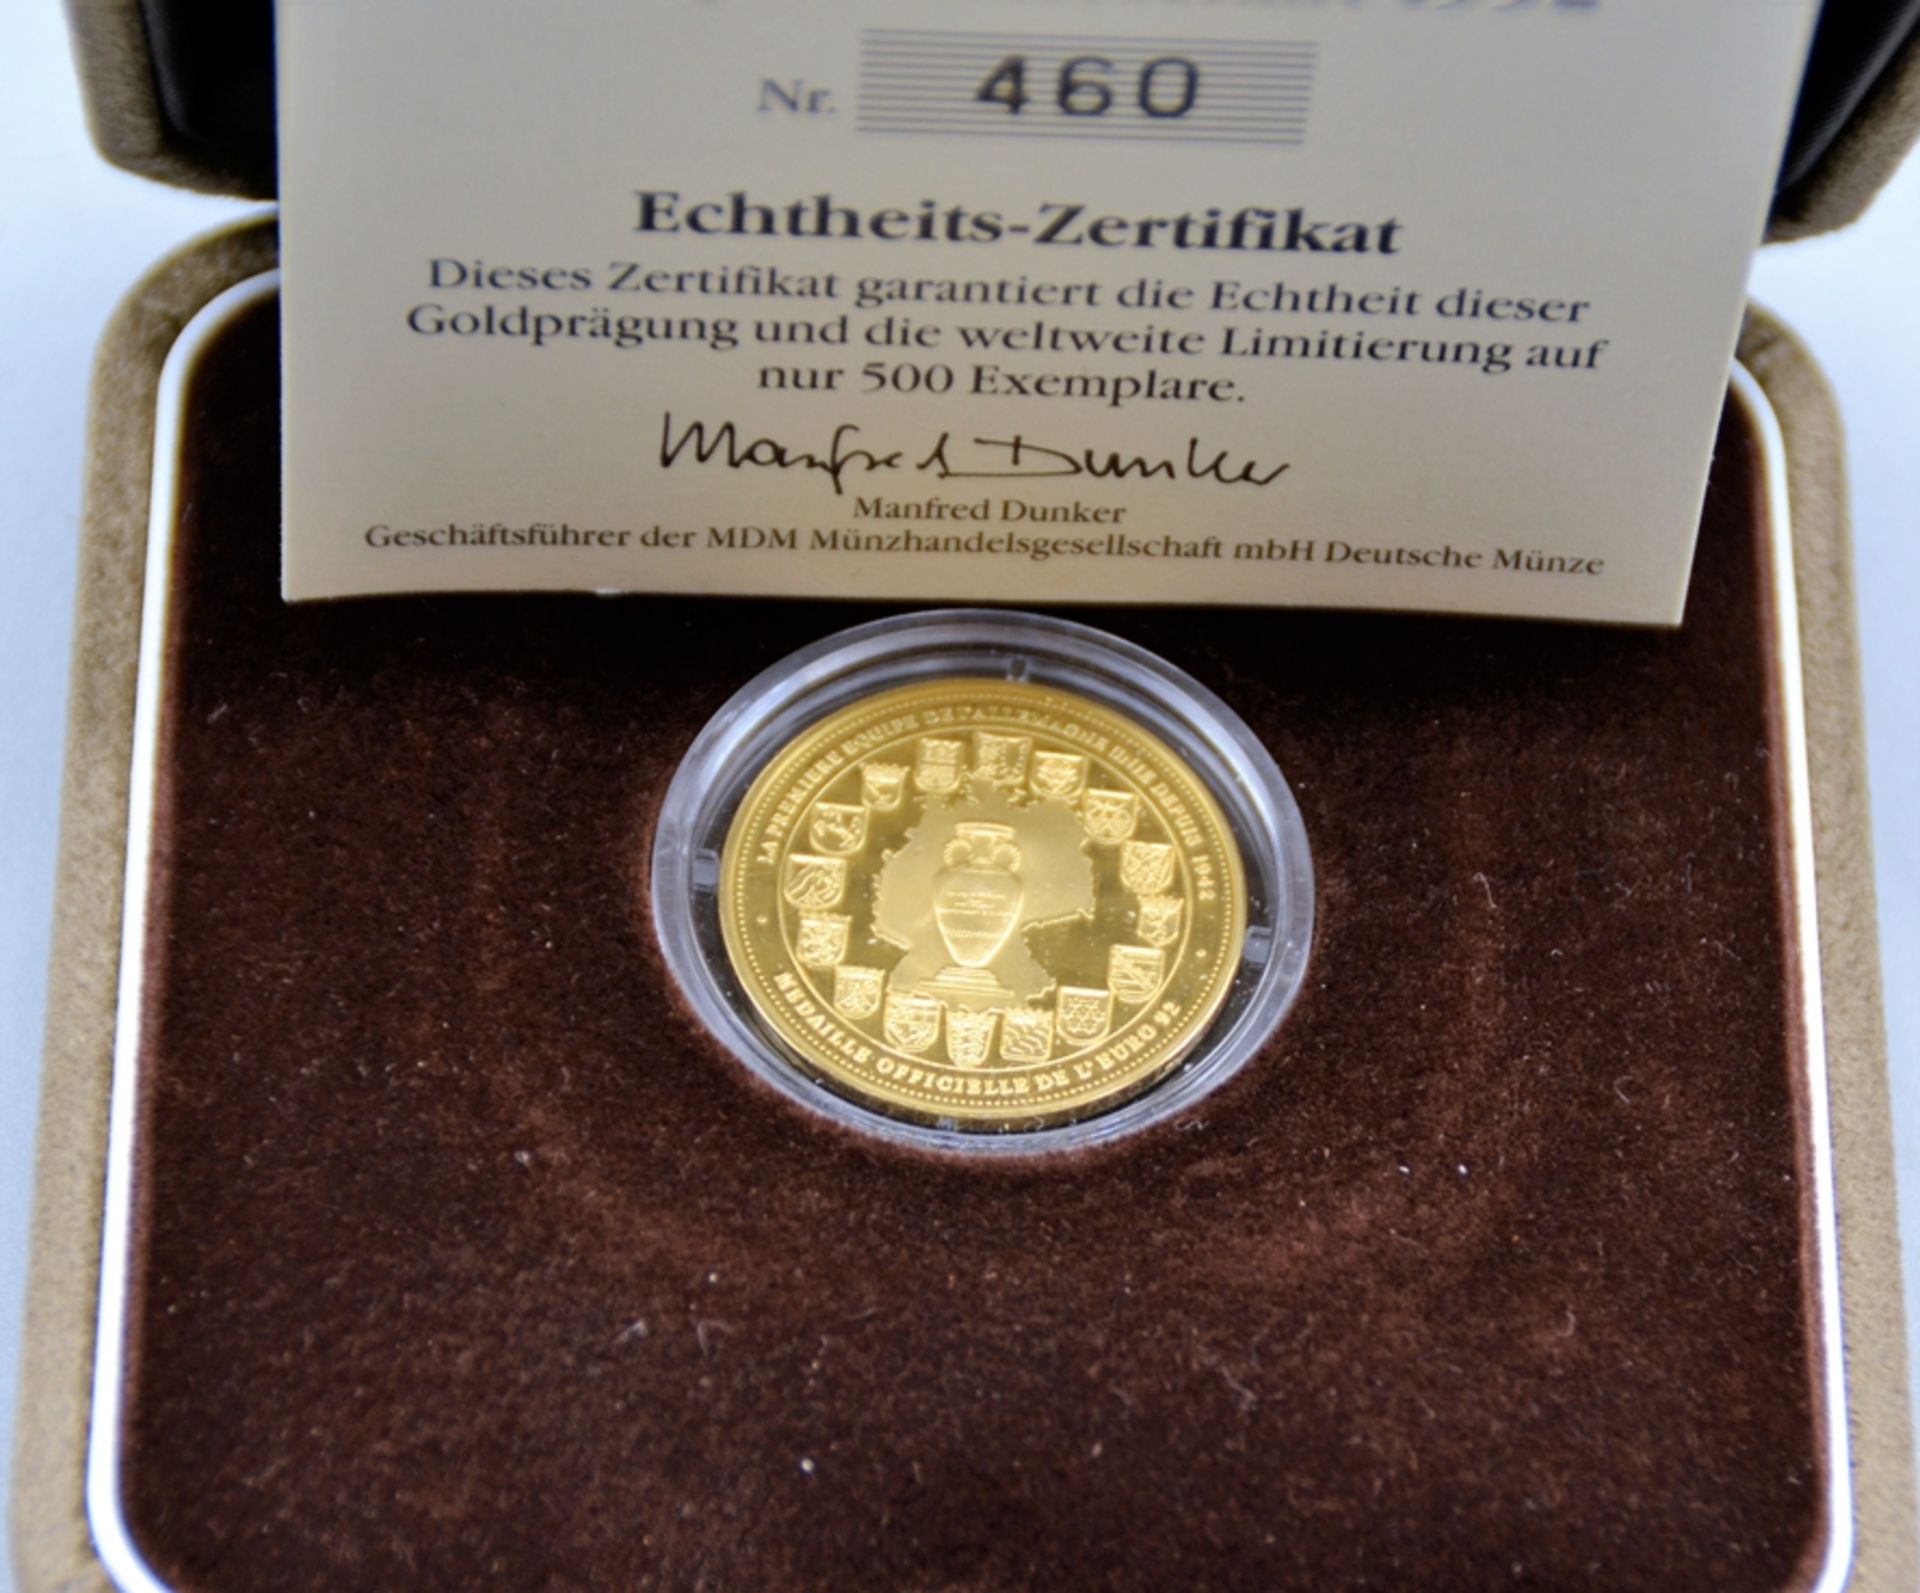 Gold Medaille Fußball Europameisterschaft 1992, Feingold 999 ca. 10 g Ø 26 mm, limitiert auf 500 we - Bild 2 aus 2